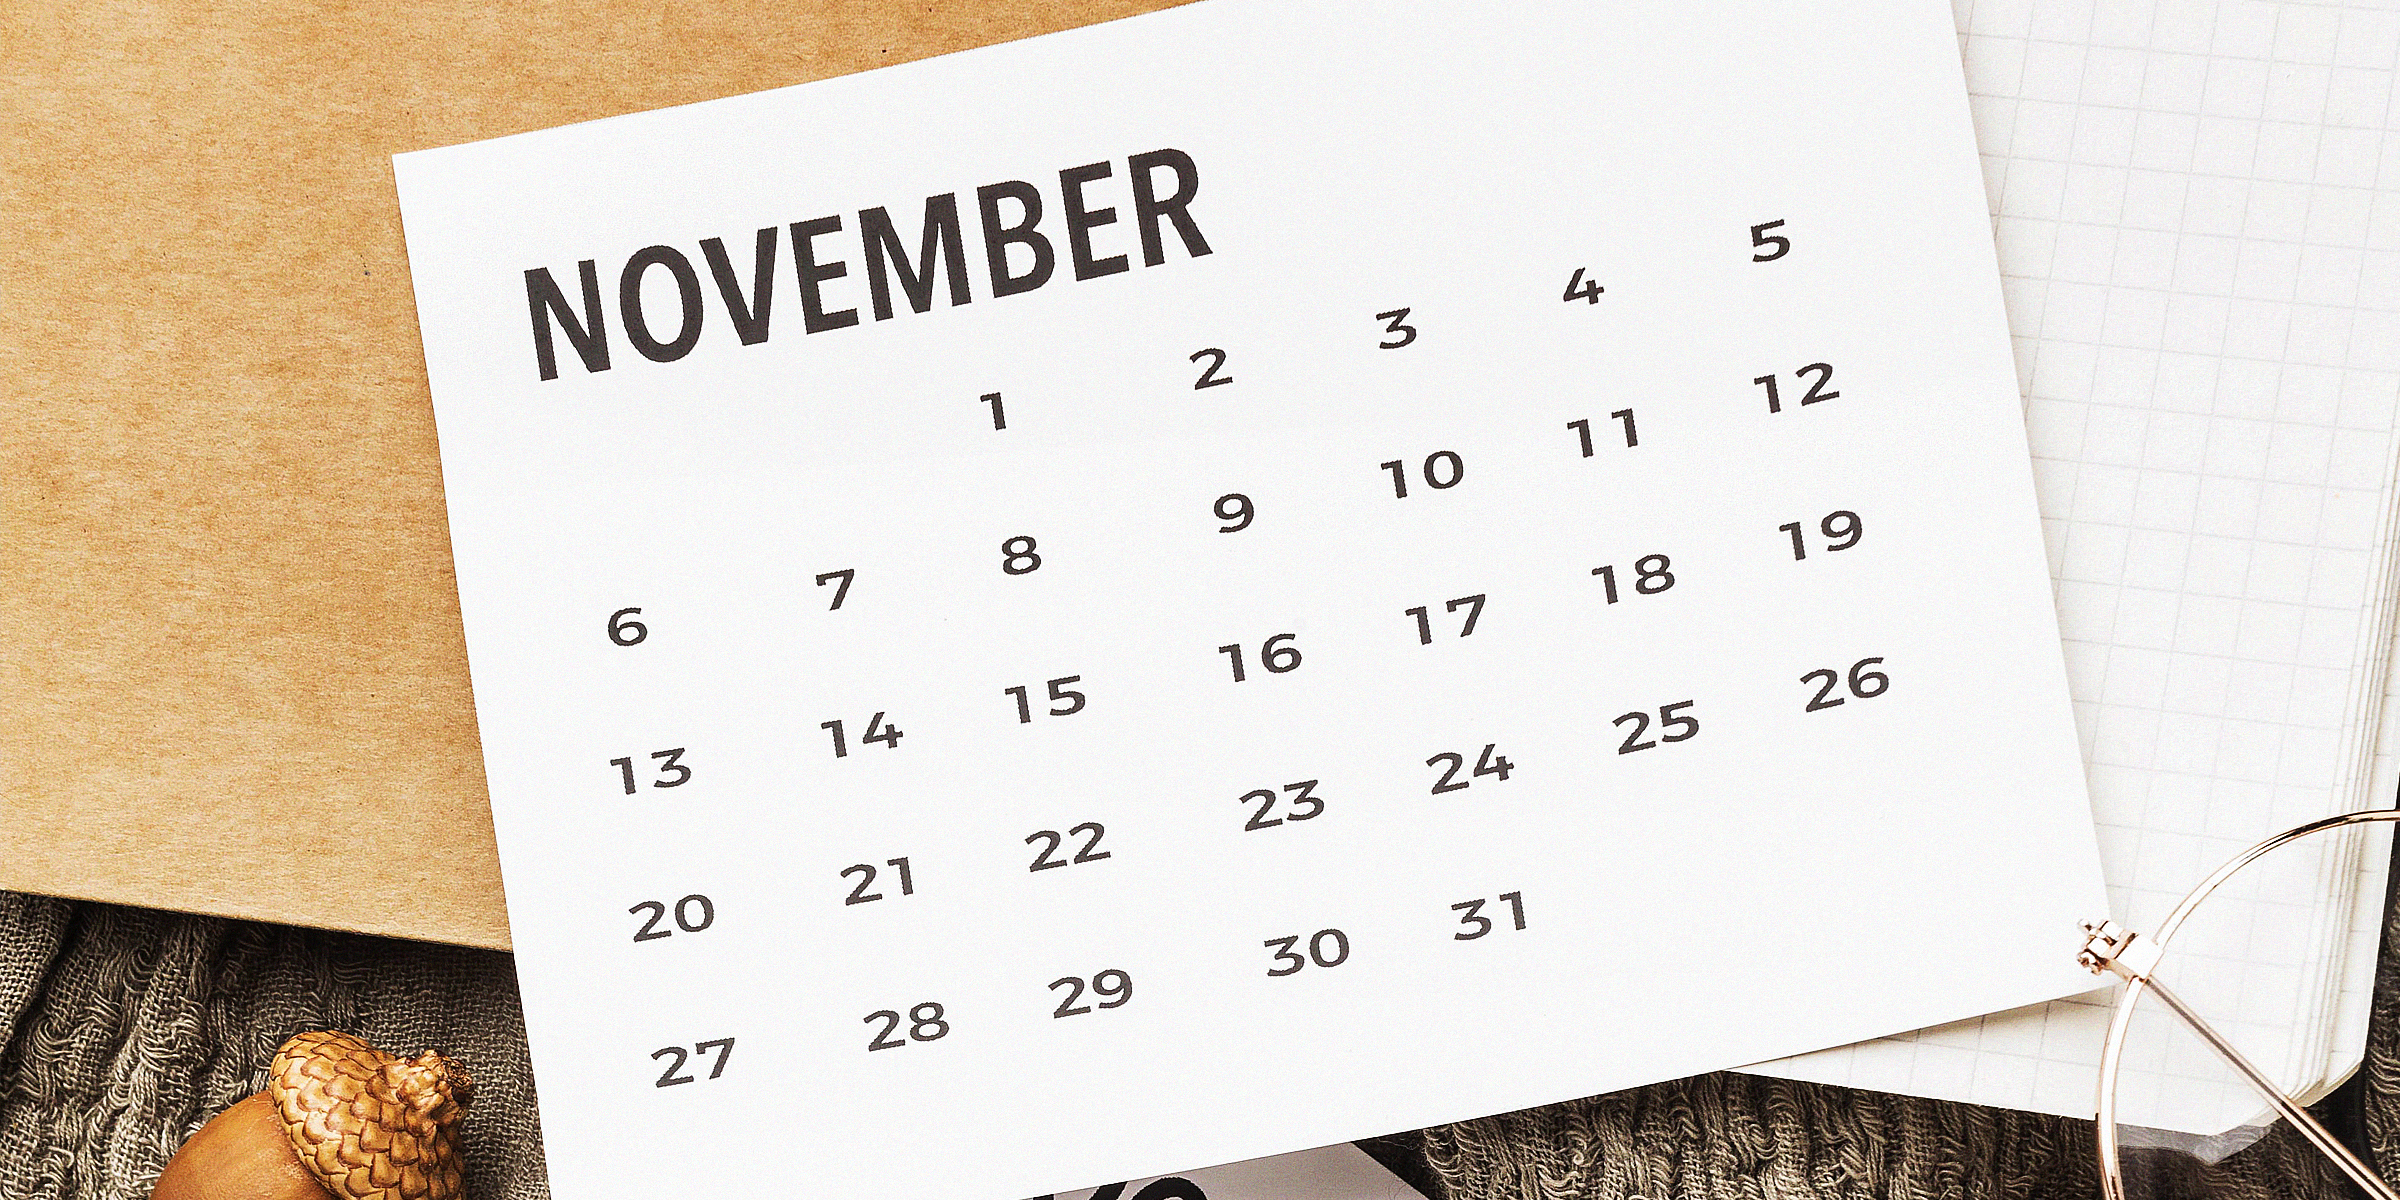 A calendar for the month of November | Source: Freepik